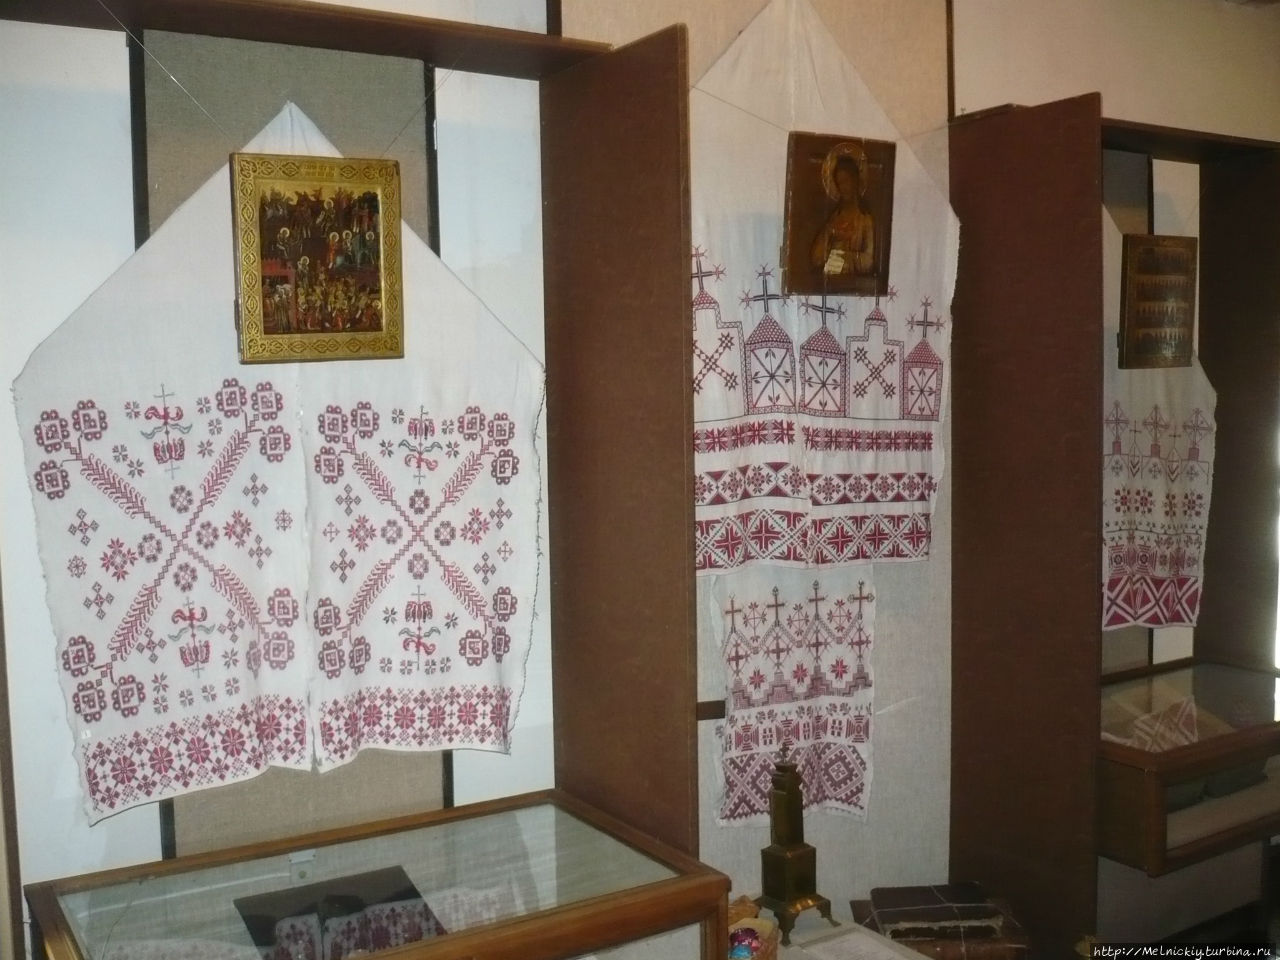 Этнографический музей «Мельница» («Млын») Орша, Беларусь